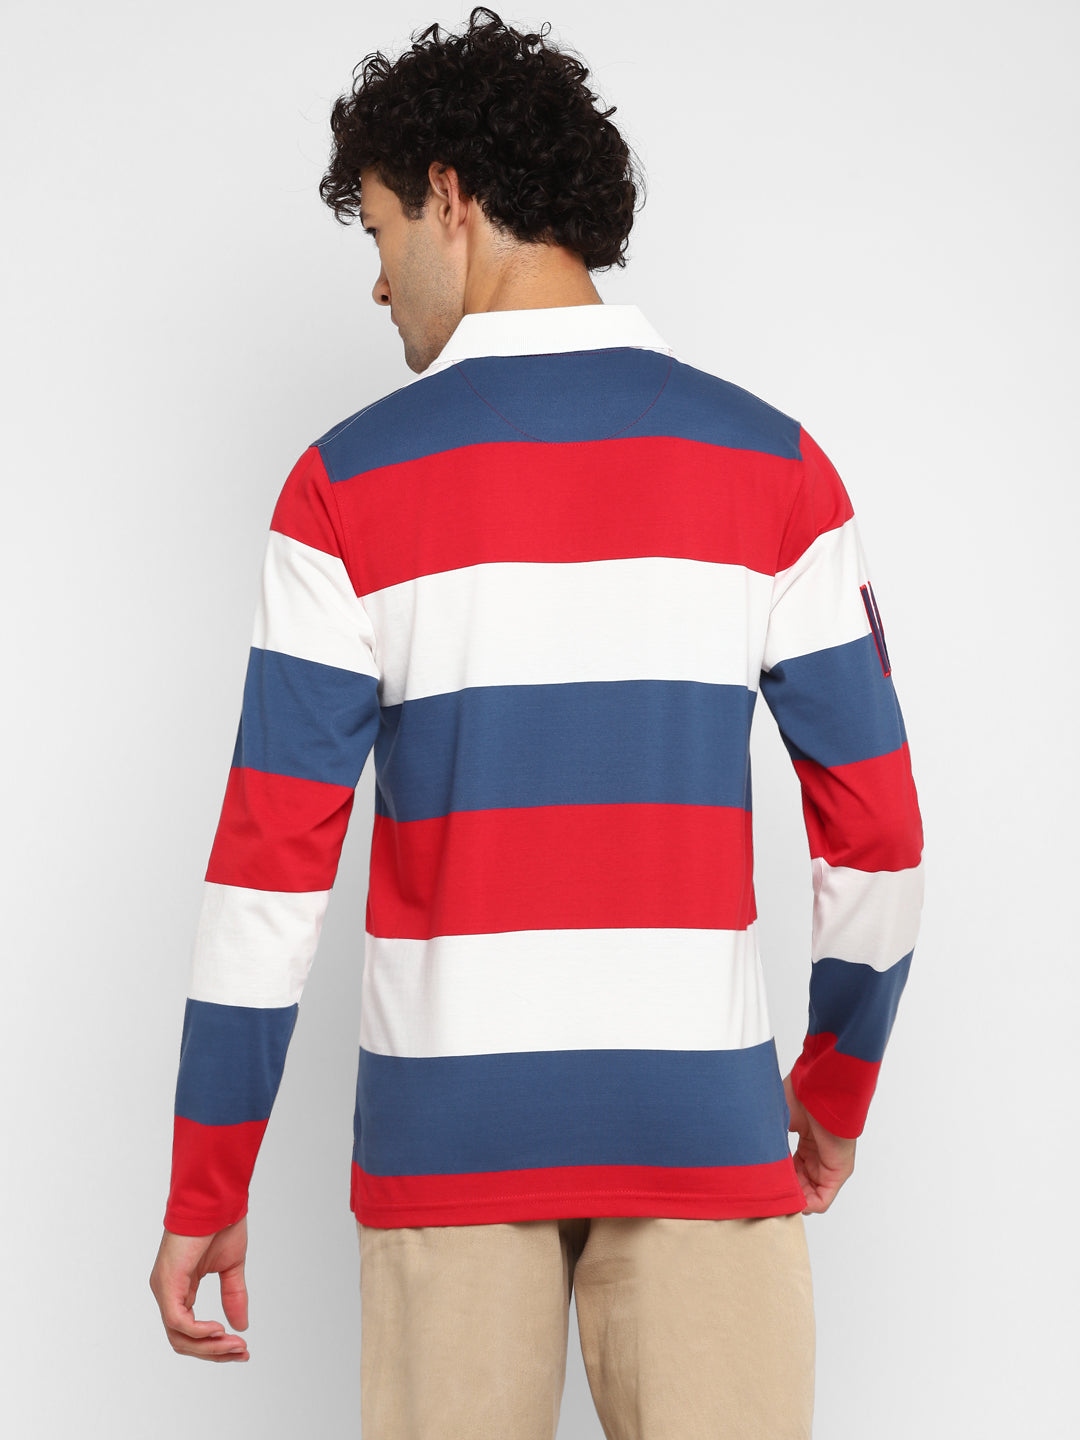 Full Sleeves Striped Polo T-Shirt for Men - White, Red & Navy